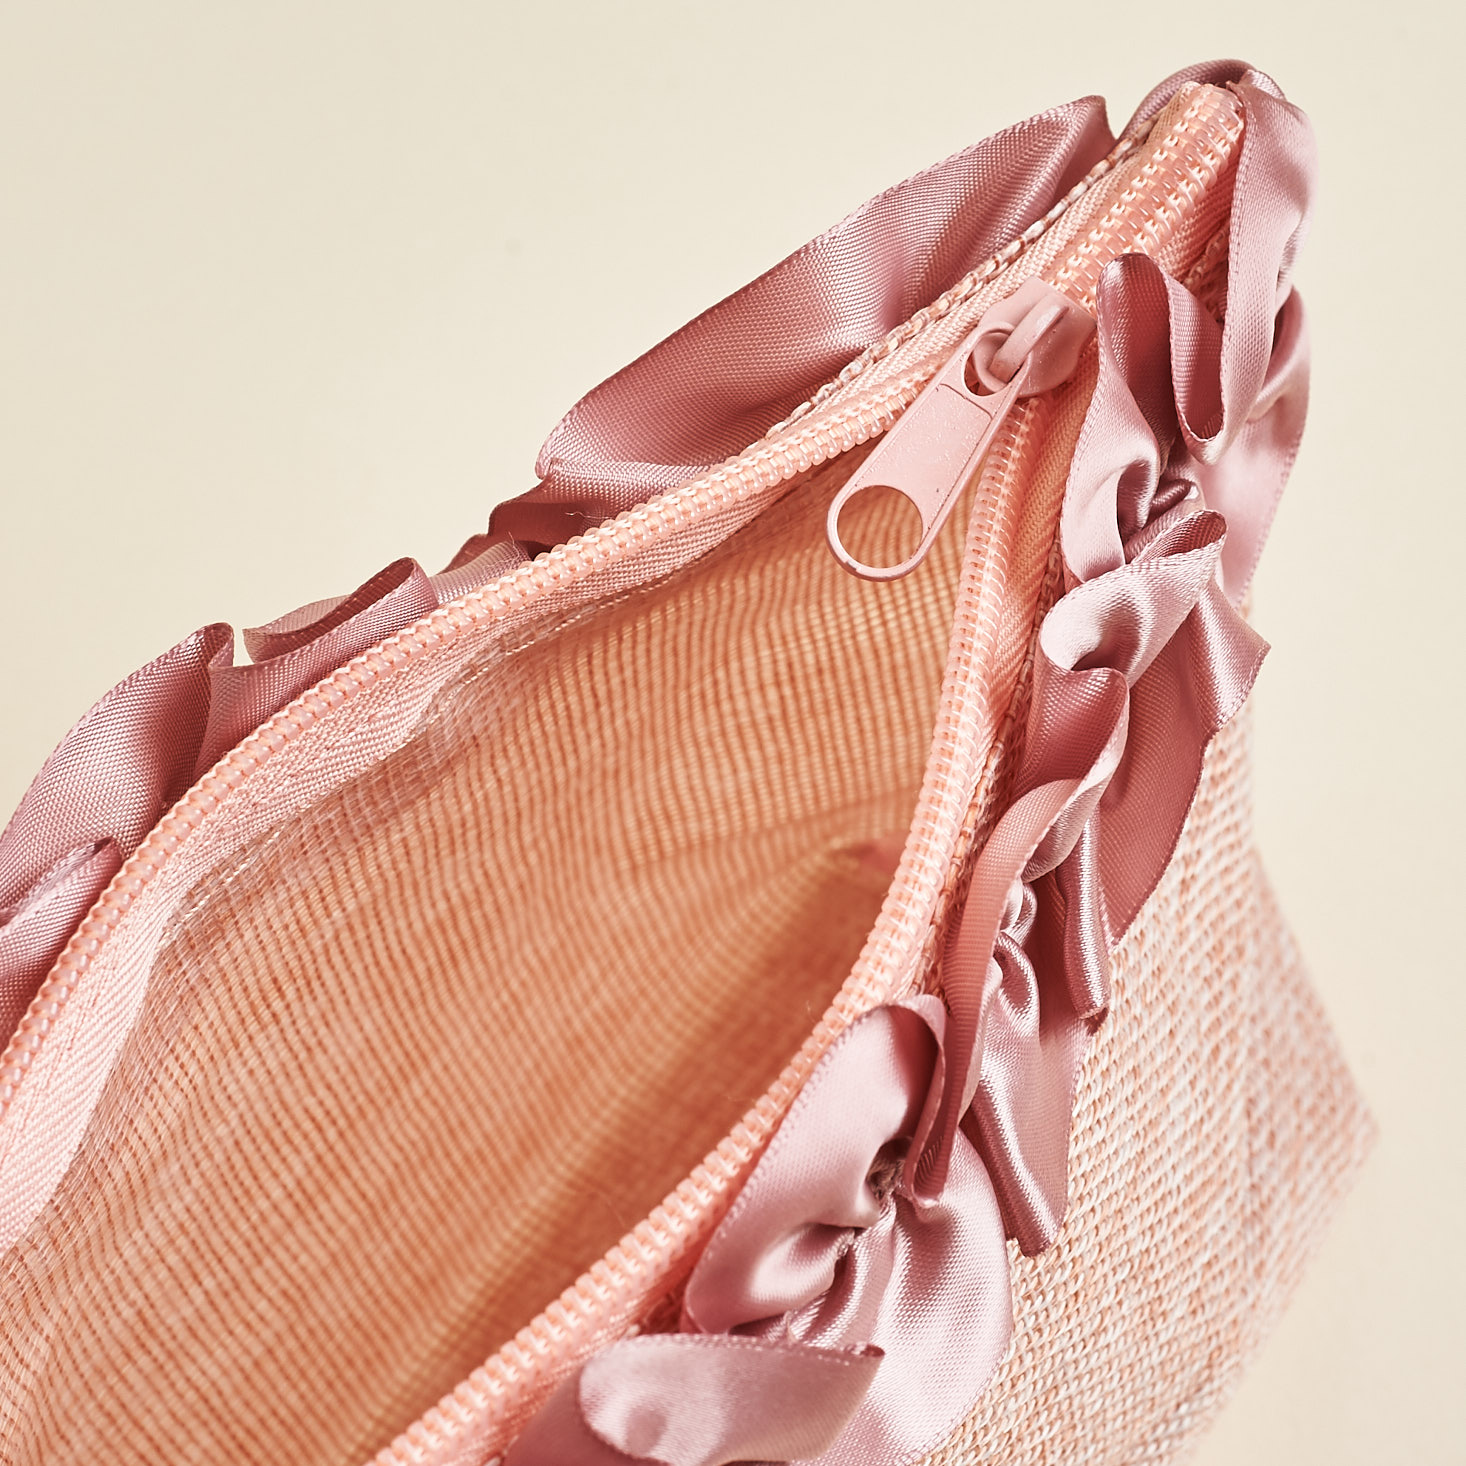 inside zipper pink makeup pouch